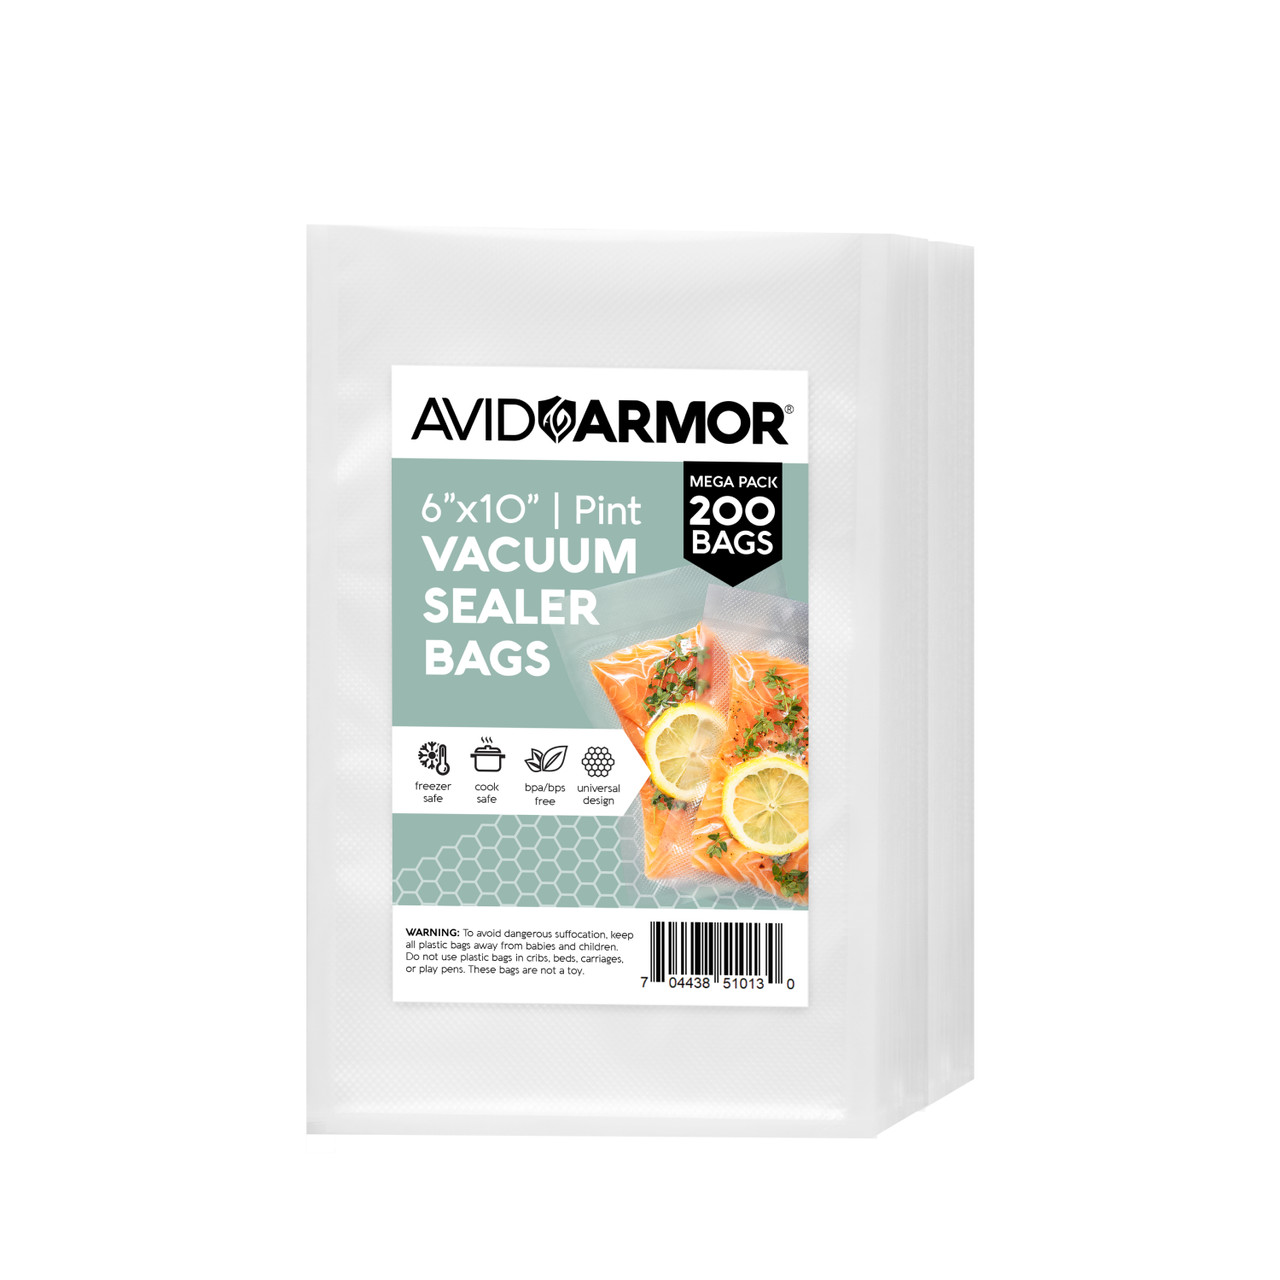 Vacuum Sealer Rolls, Vacuum Sealer Bags - 4 Packs Food-Storage Bags, Fits  All Clamp Vacuum Sealer Machine, BPA Free, for Meal Prep Sous Vide